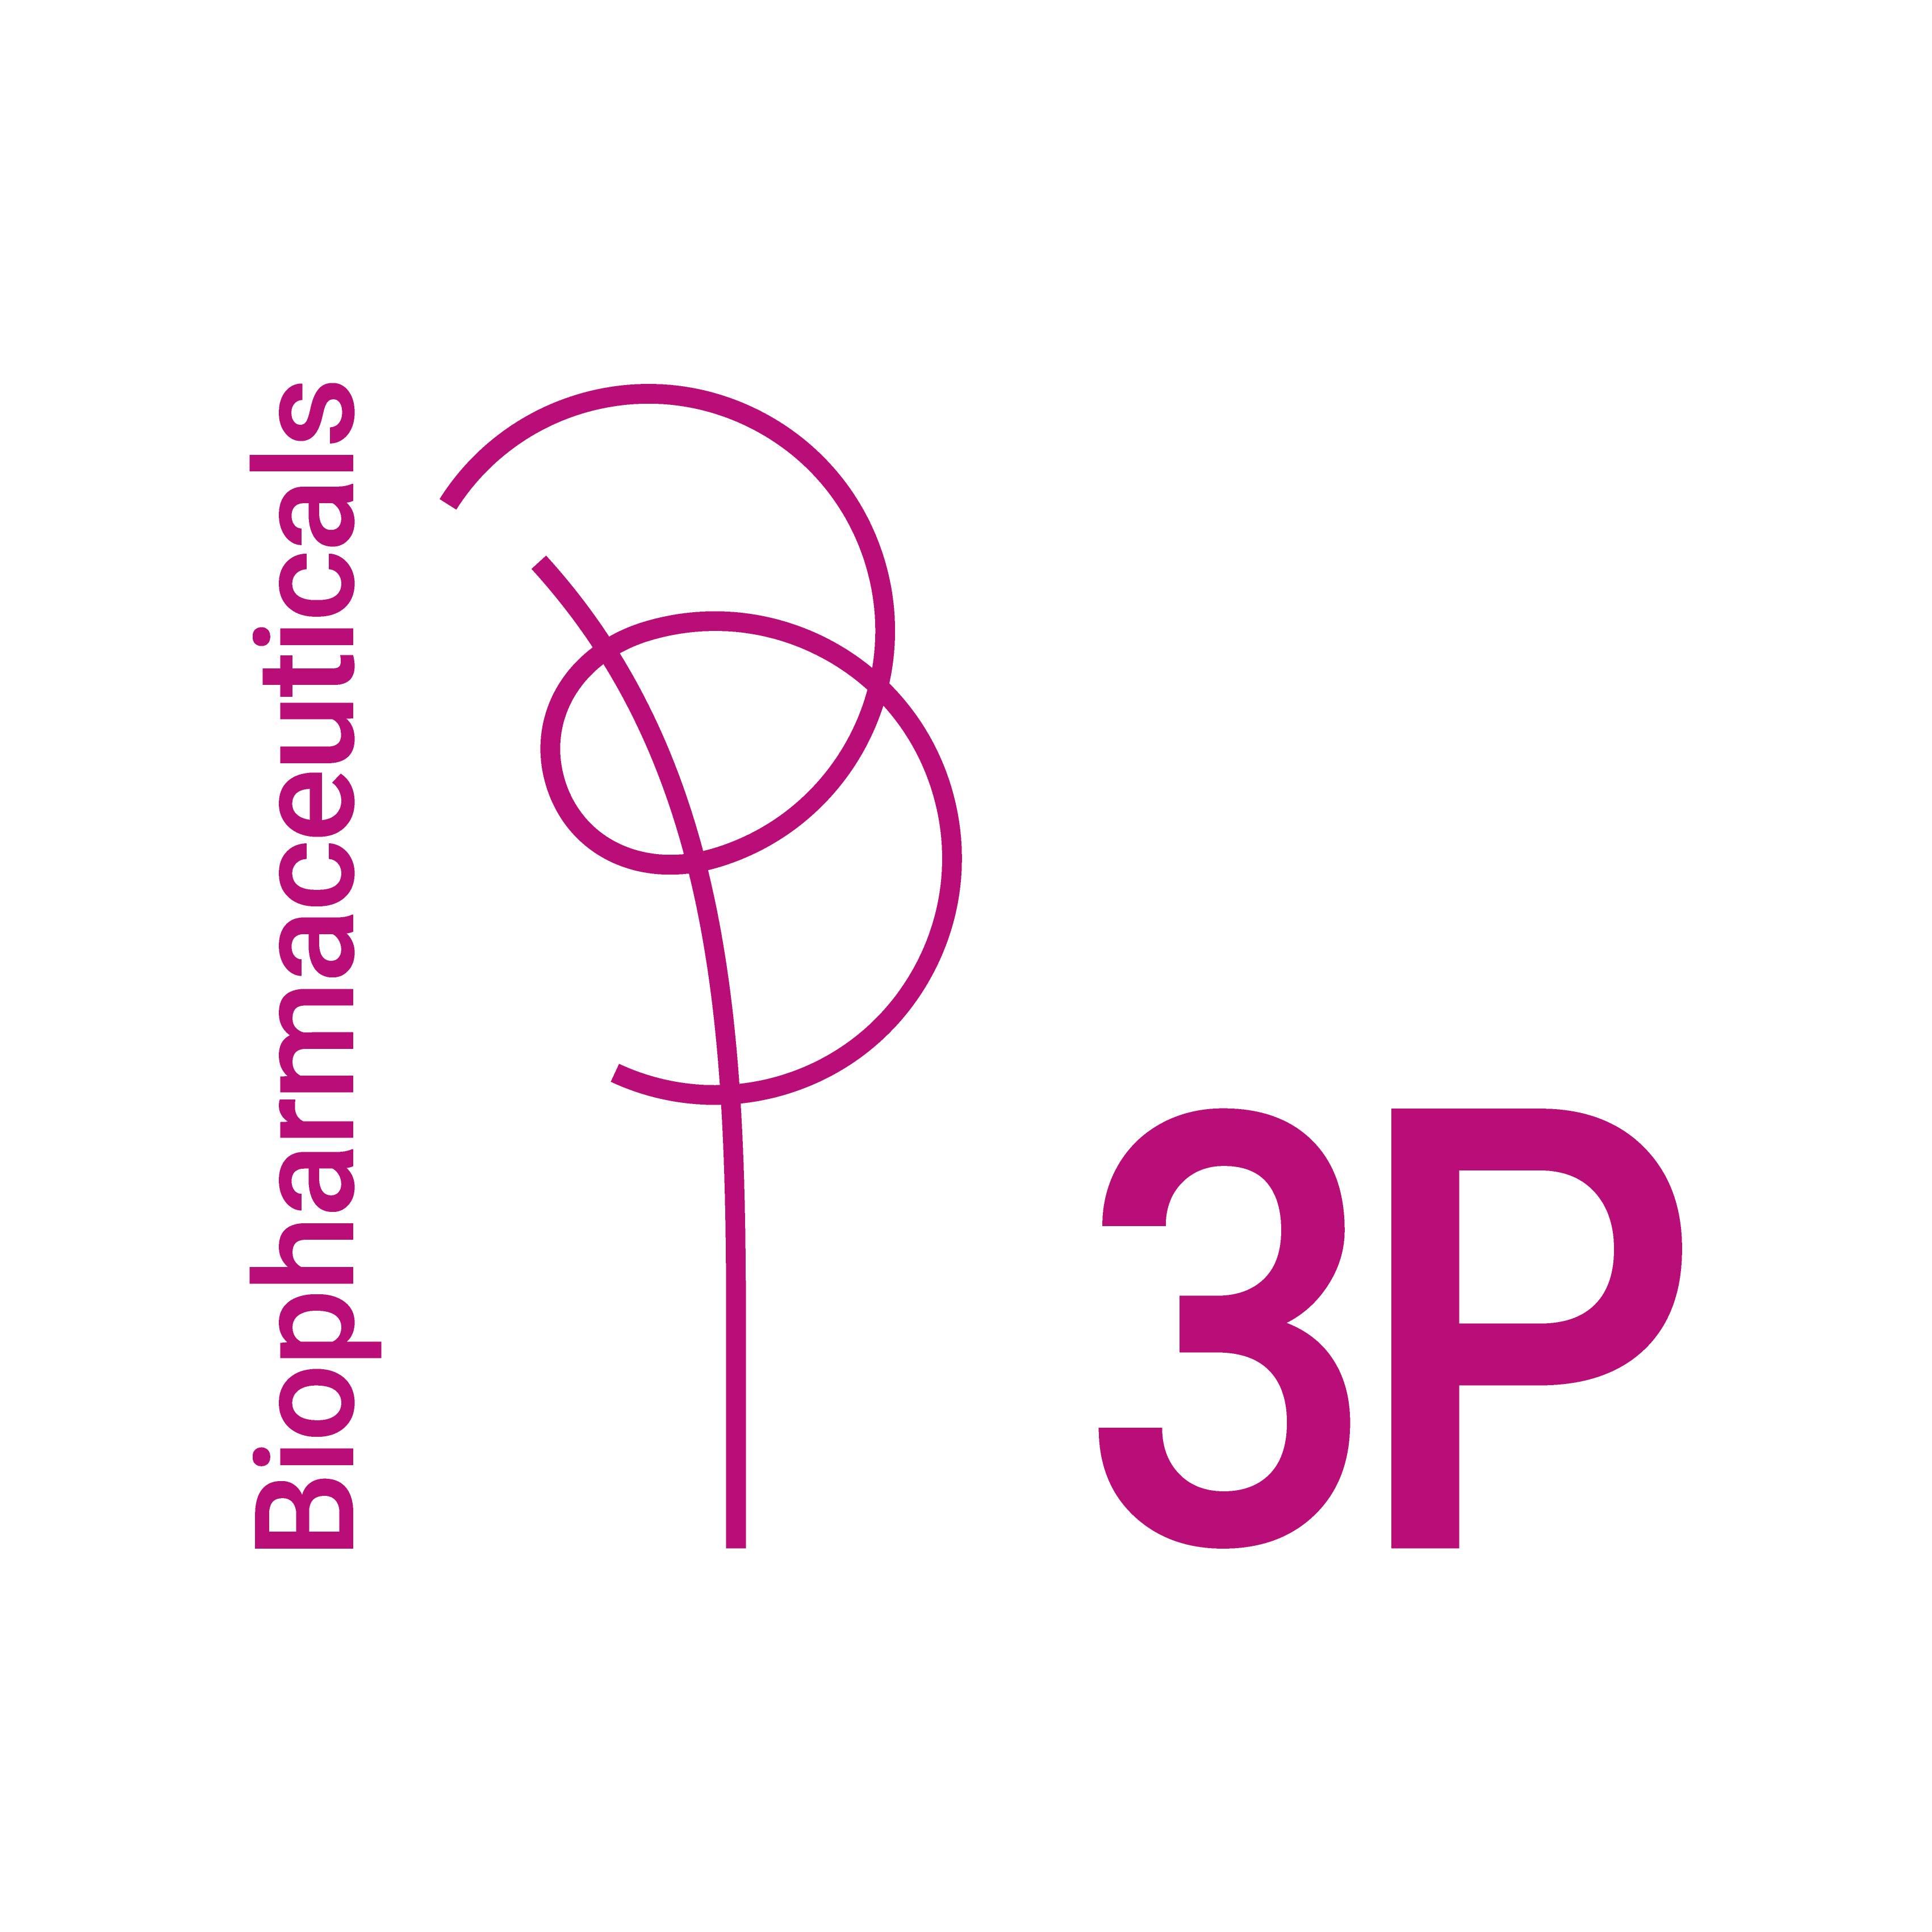 Logo 3P